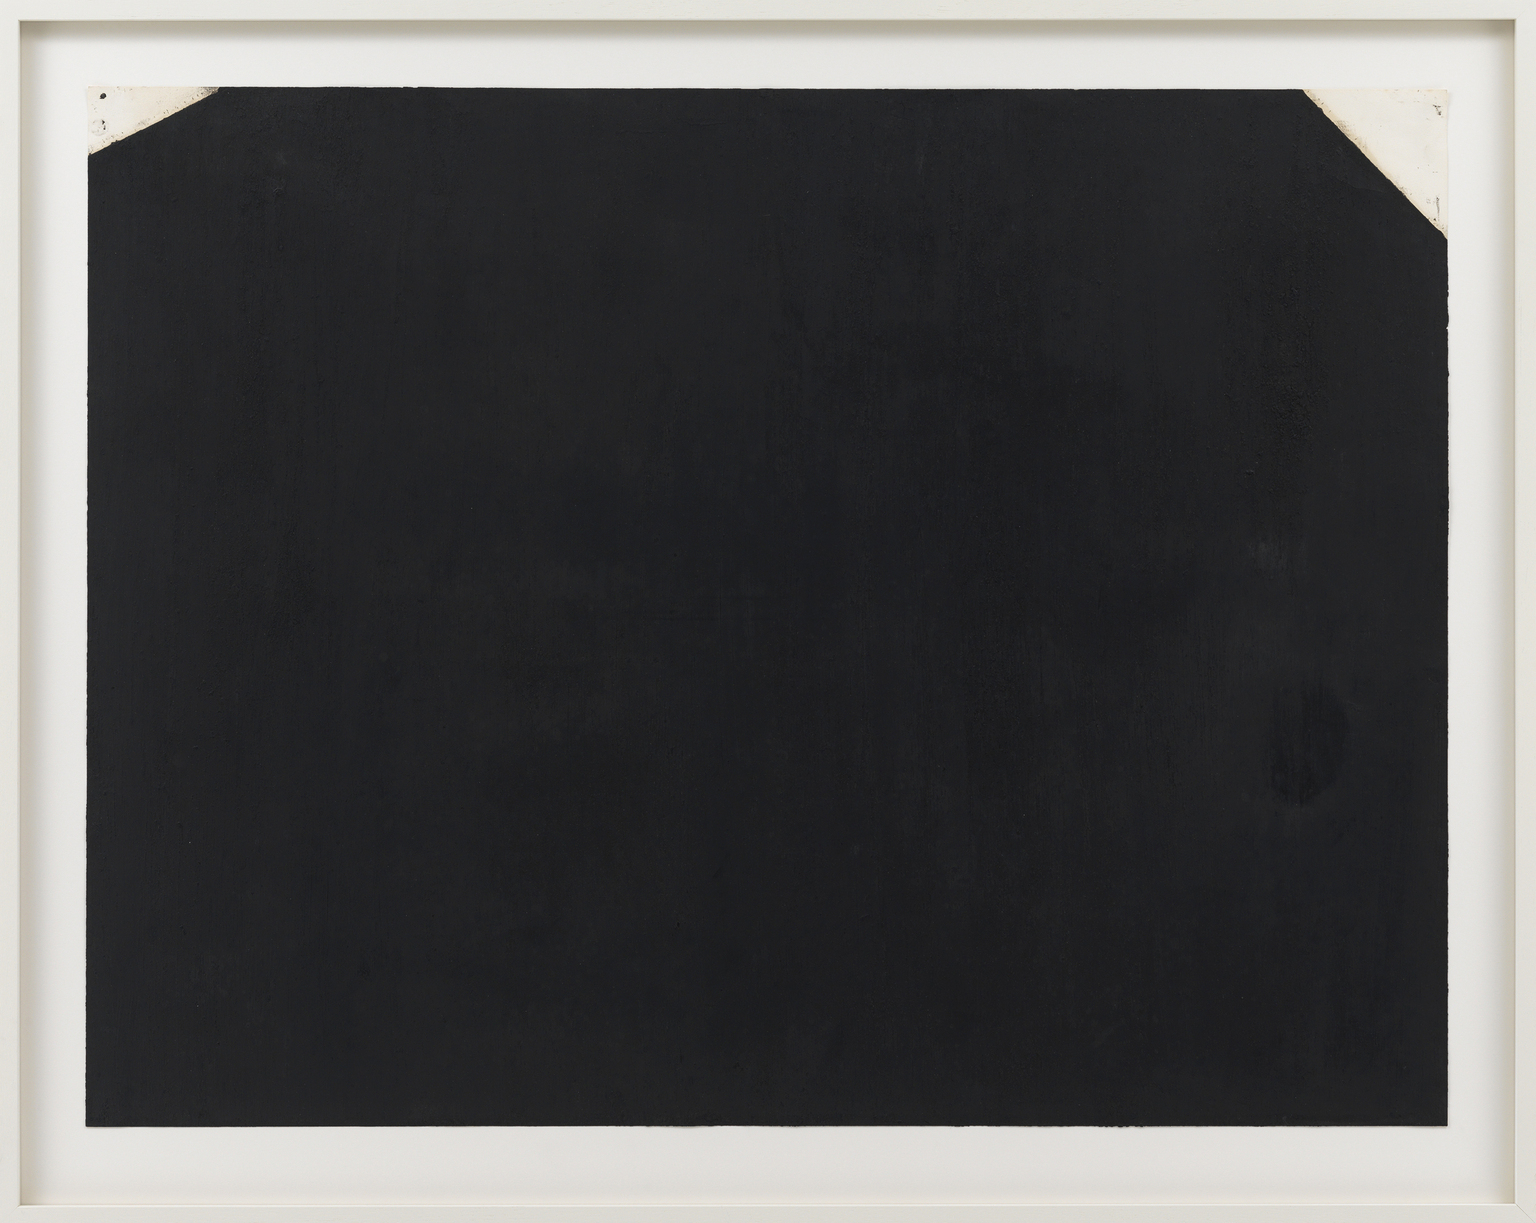 Richard Serra - Untitled (JA3445), 1980-81